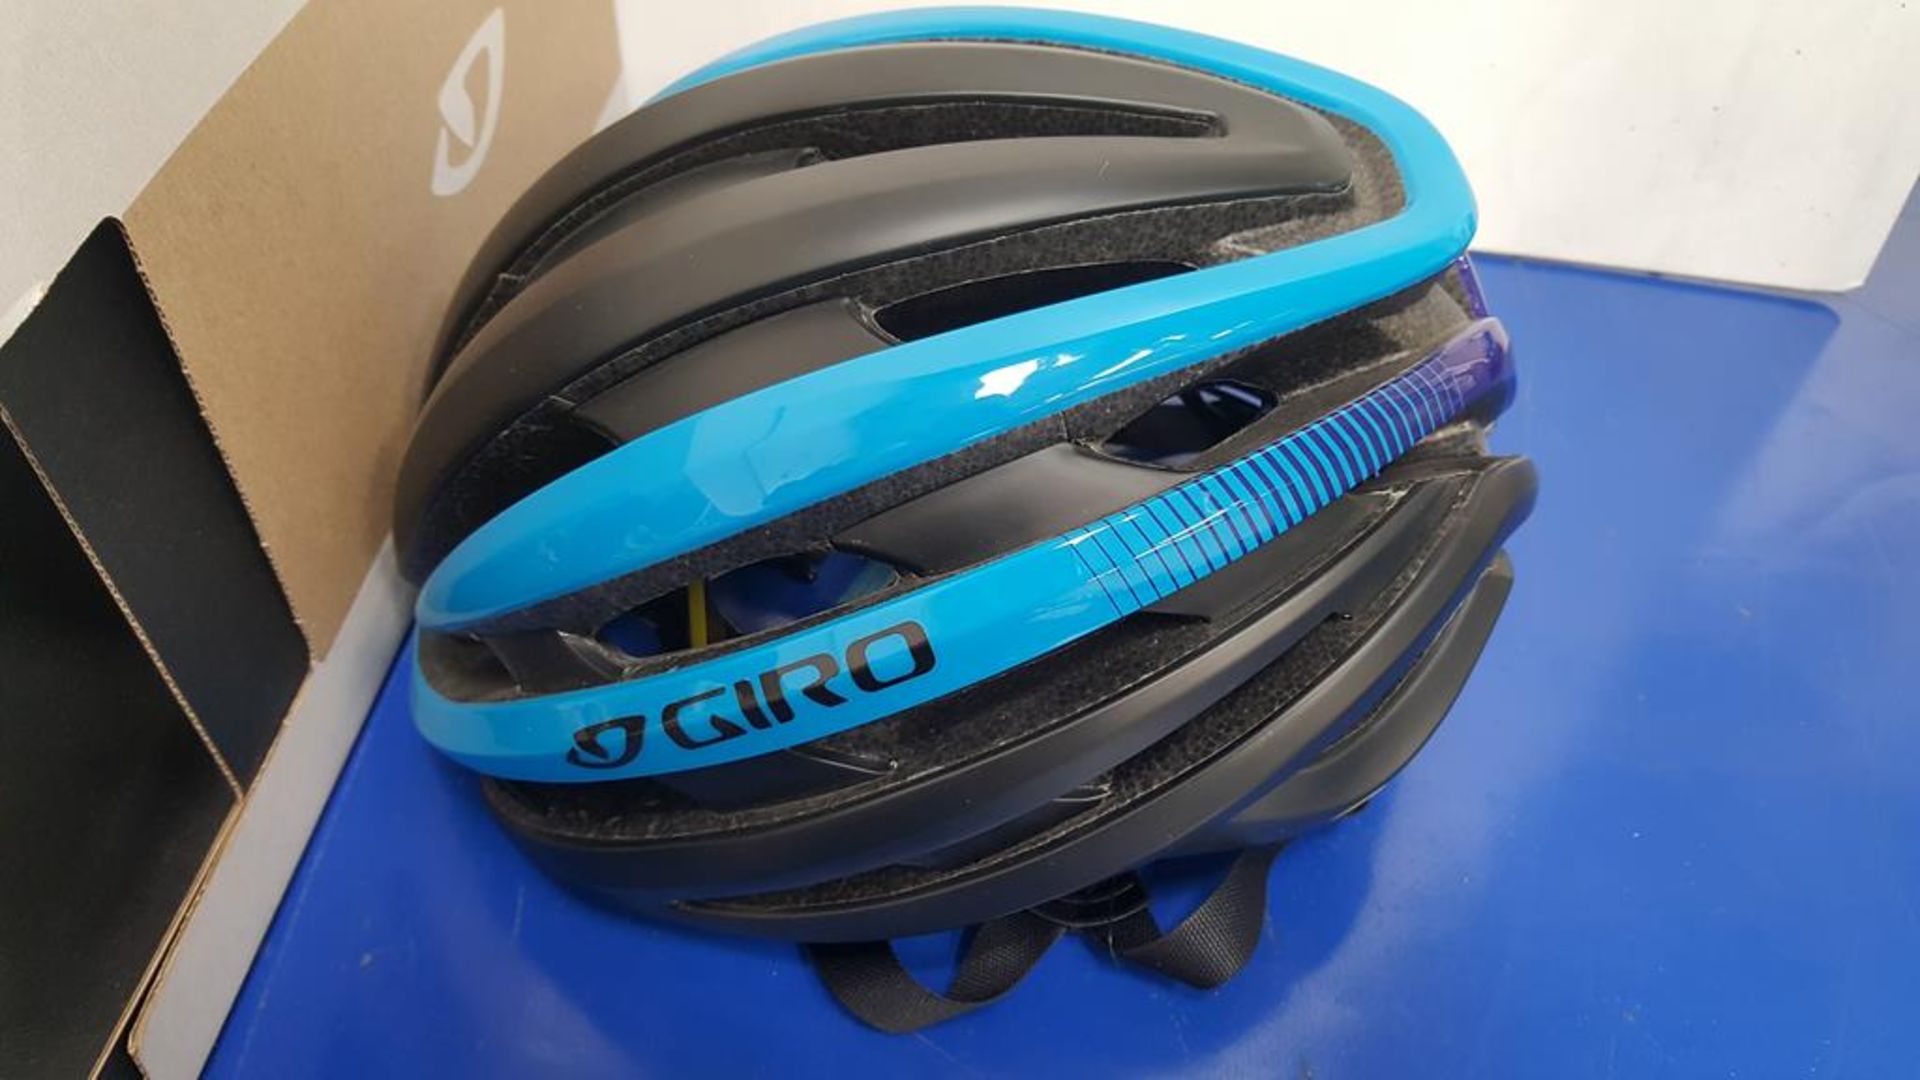 Giro Cinder Mips Adult Medium Cycling Helmet - Image 4 of 5